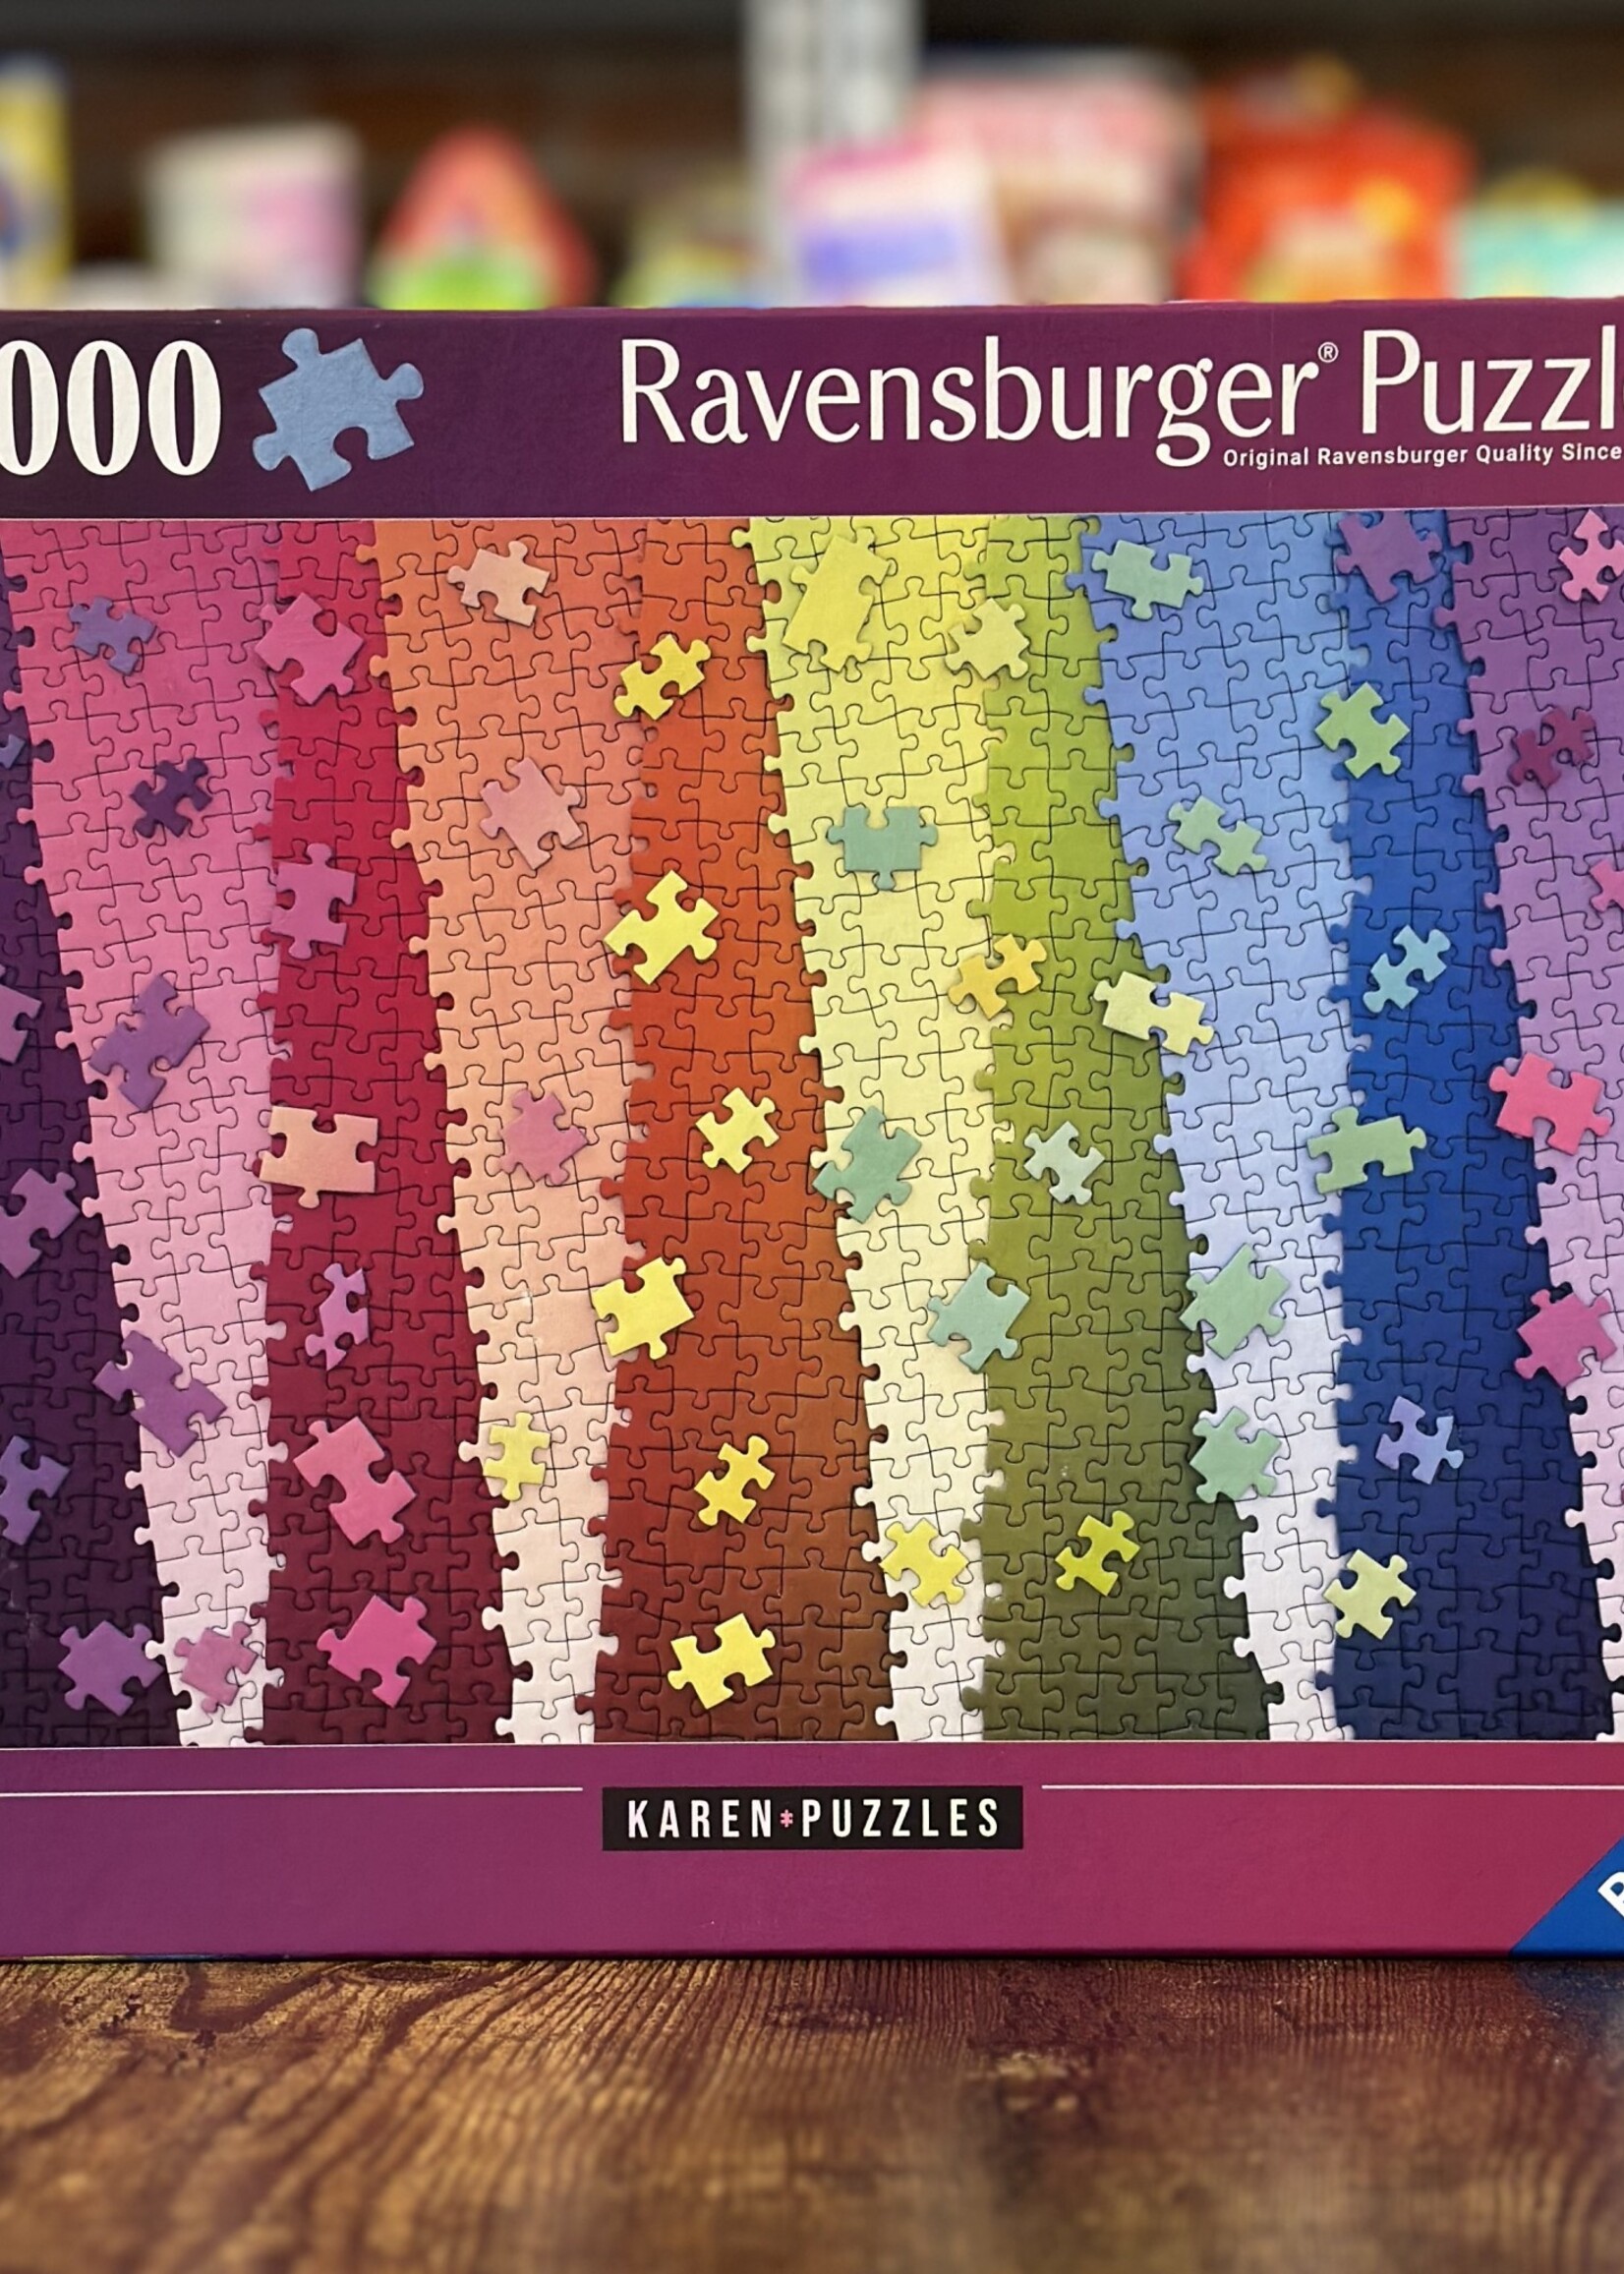 Ravensburger Puzzle - Colors on Colors (Karen Puzzles) 1000 Pc.